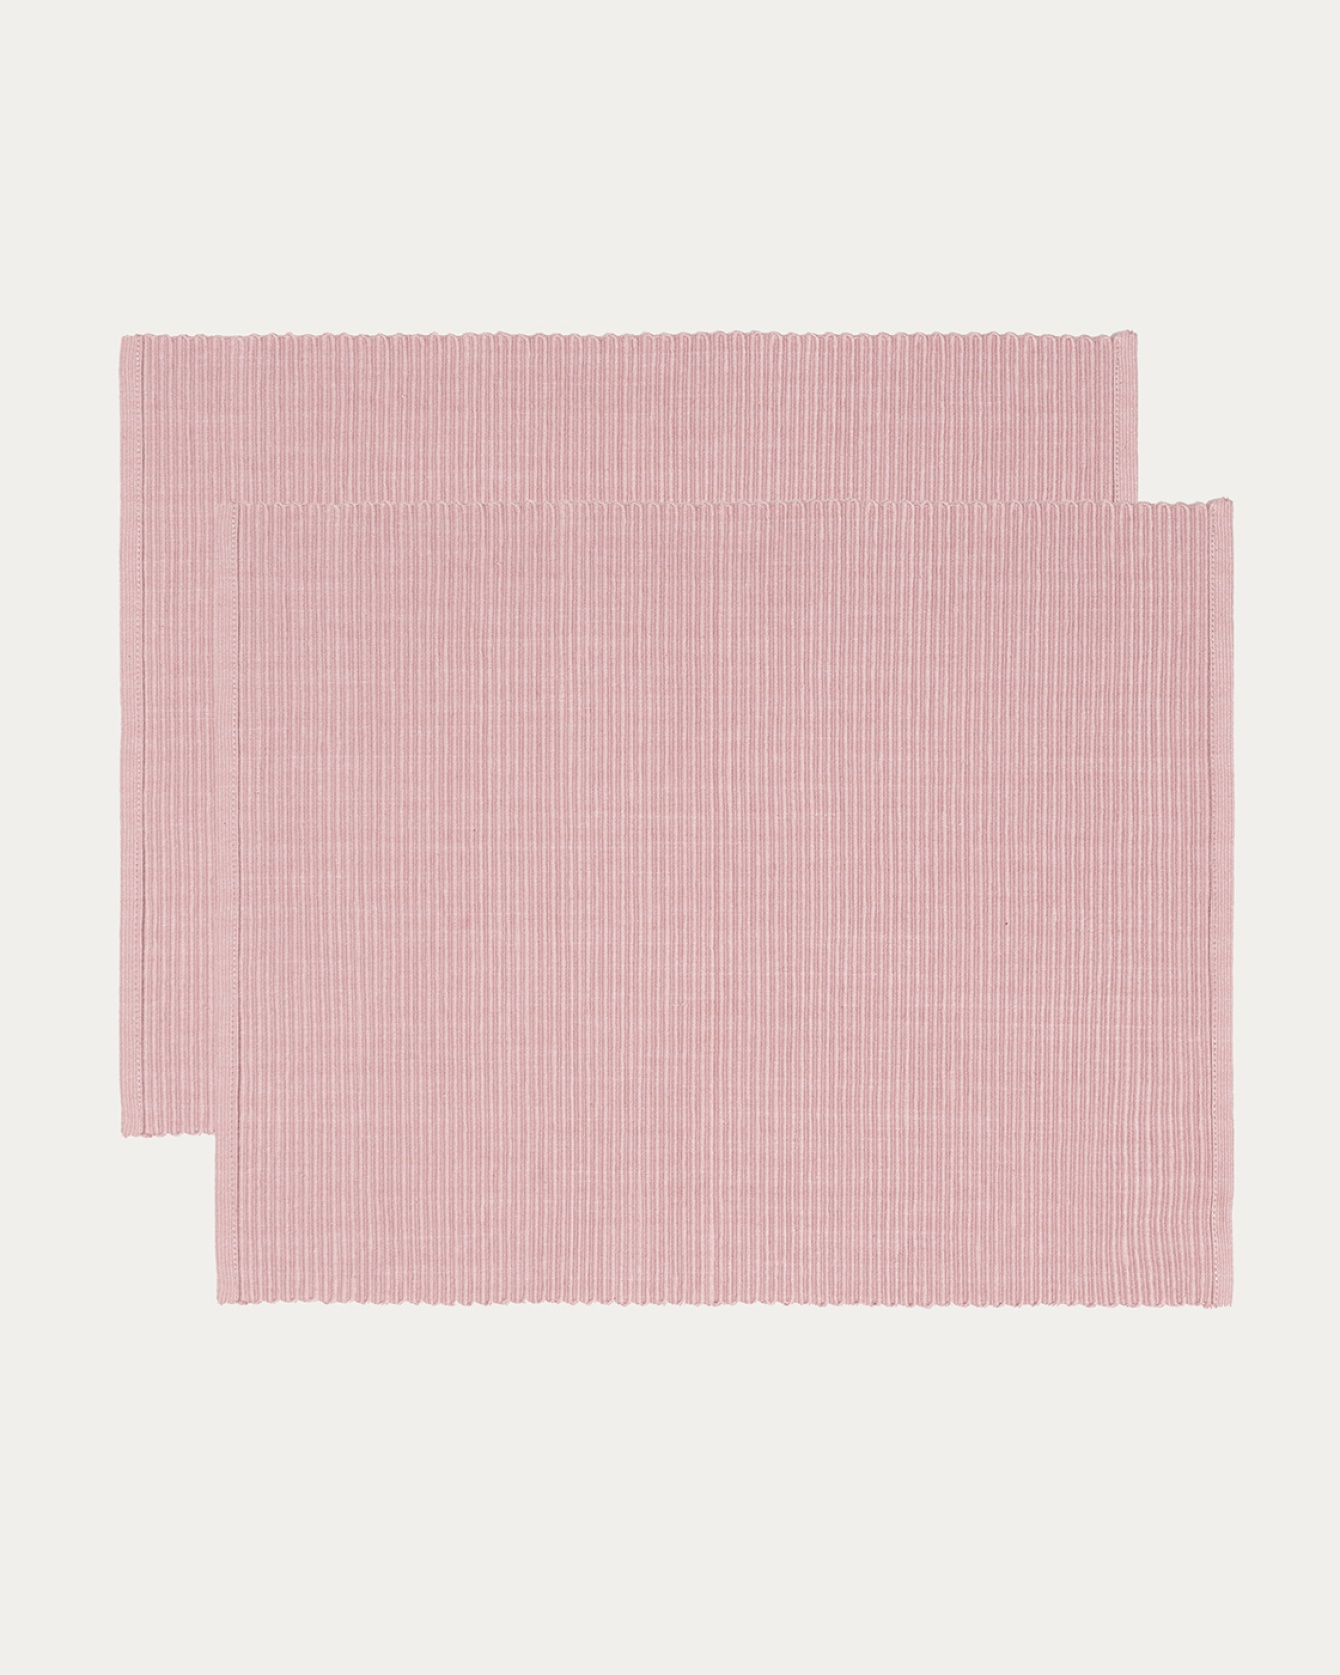 Produktbild dammig rosa UNI bordstablett av mjuk bomull i ribbad kvalité från LINUM DESIGN. Storlek 35x46 cm och säljs i 2-pack.